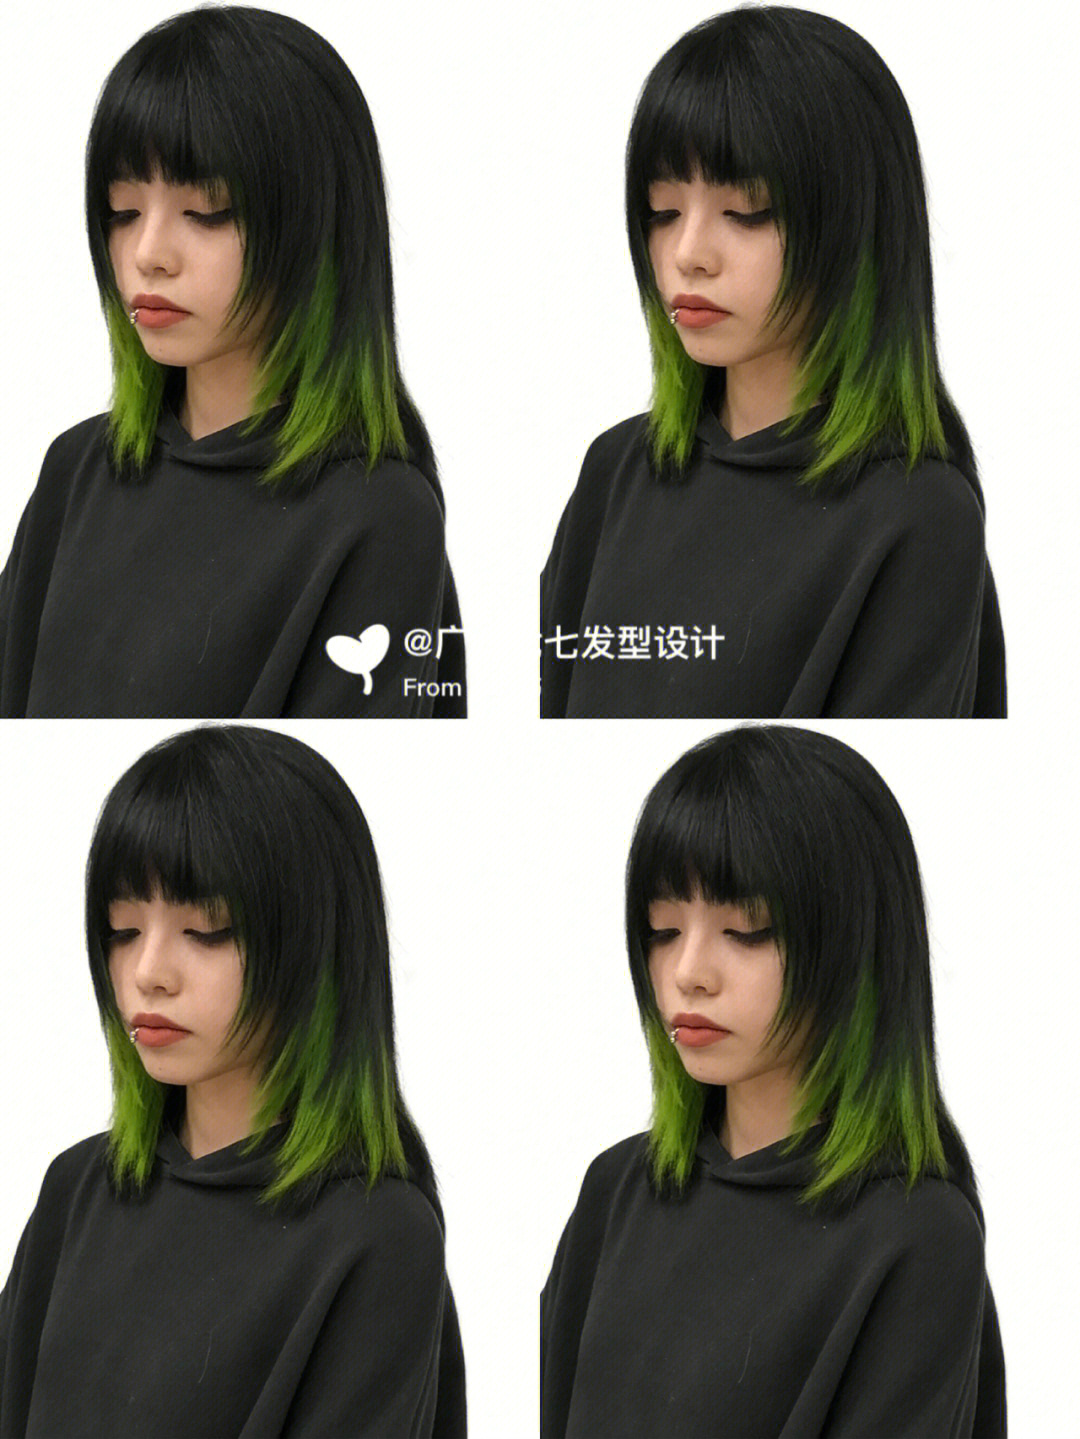 底色选择黑发,挑染的绿灰色这个挑染即低调又不张扬外部是由黑发